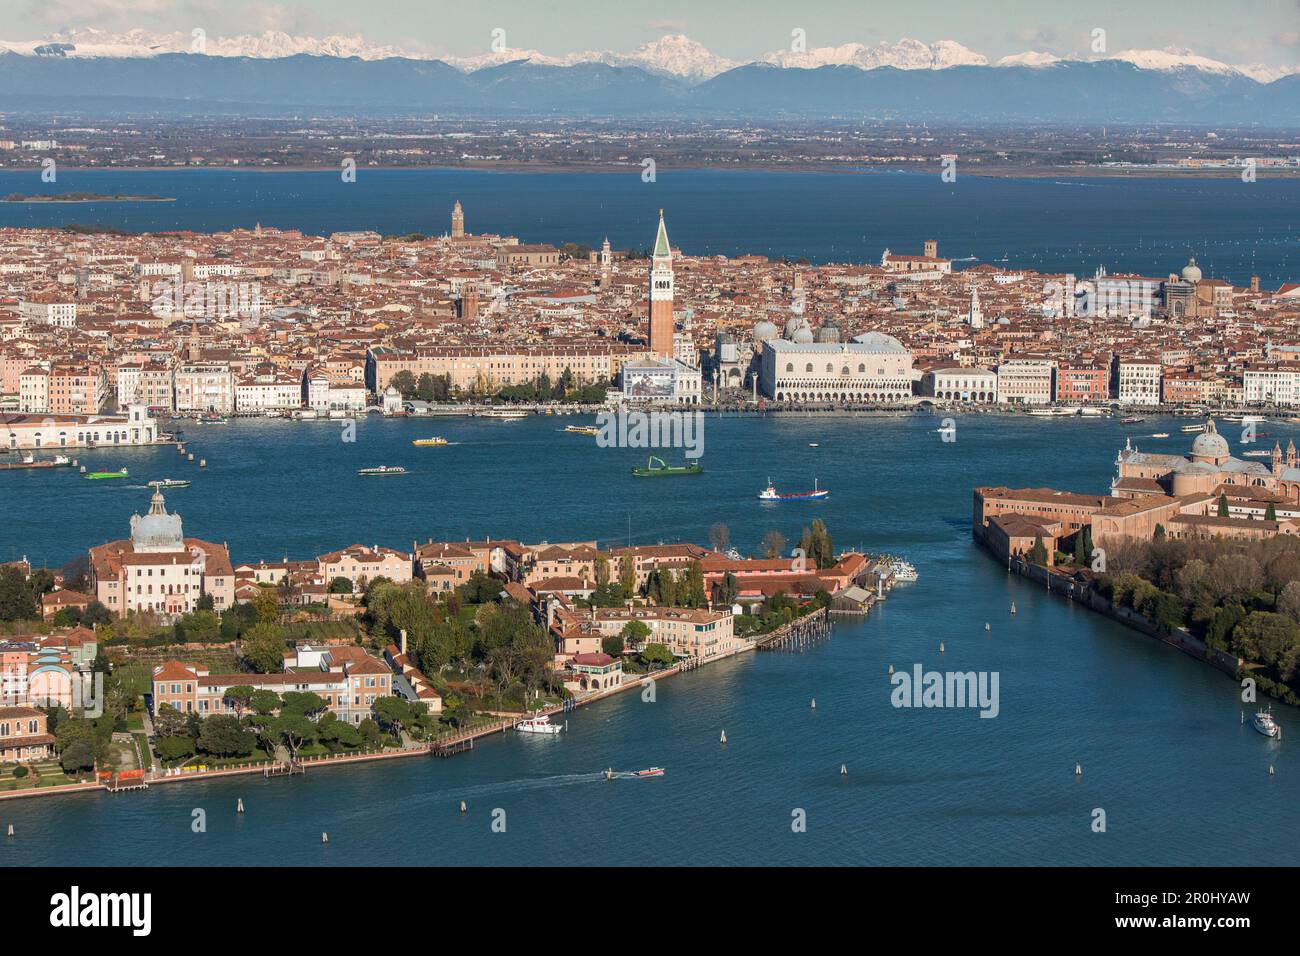 Veduta aerea di Venezia con Giudecca, San Giorgio maggiore e il Campanile di San Marco, montagne innevate delle Alpi sullo sfondo, Venezia, Veneto Foto Stock